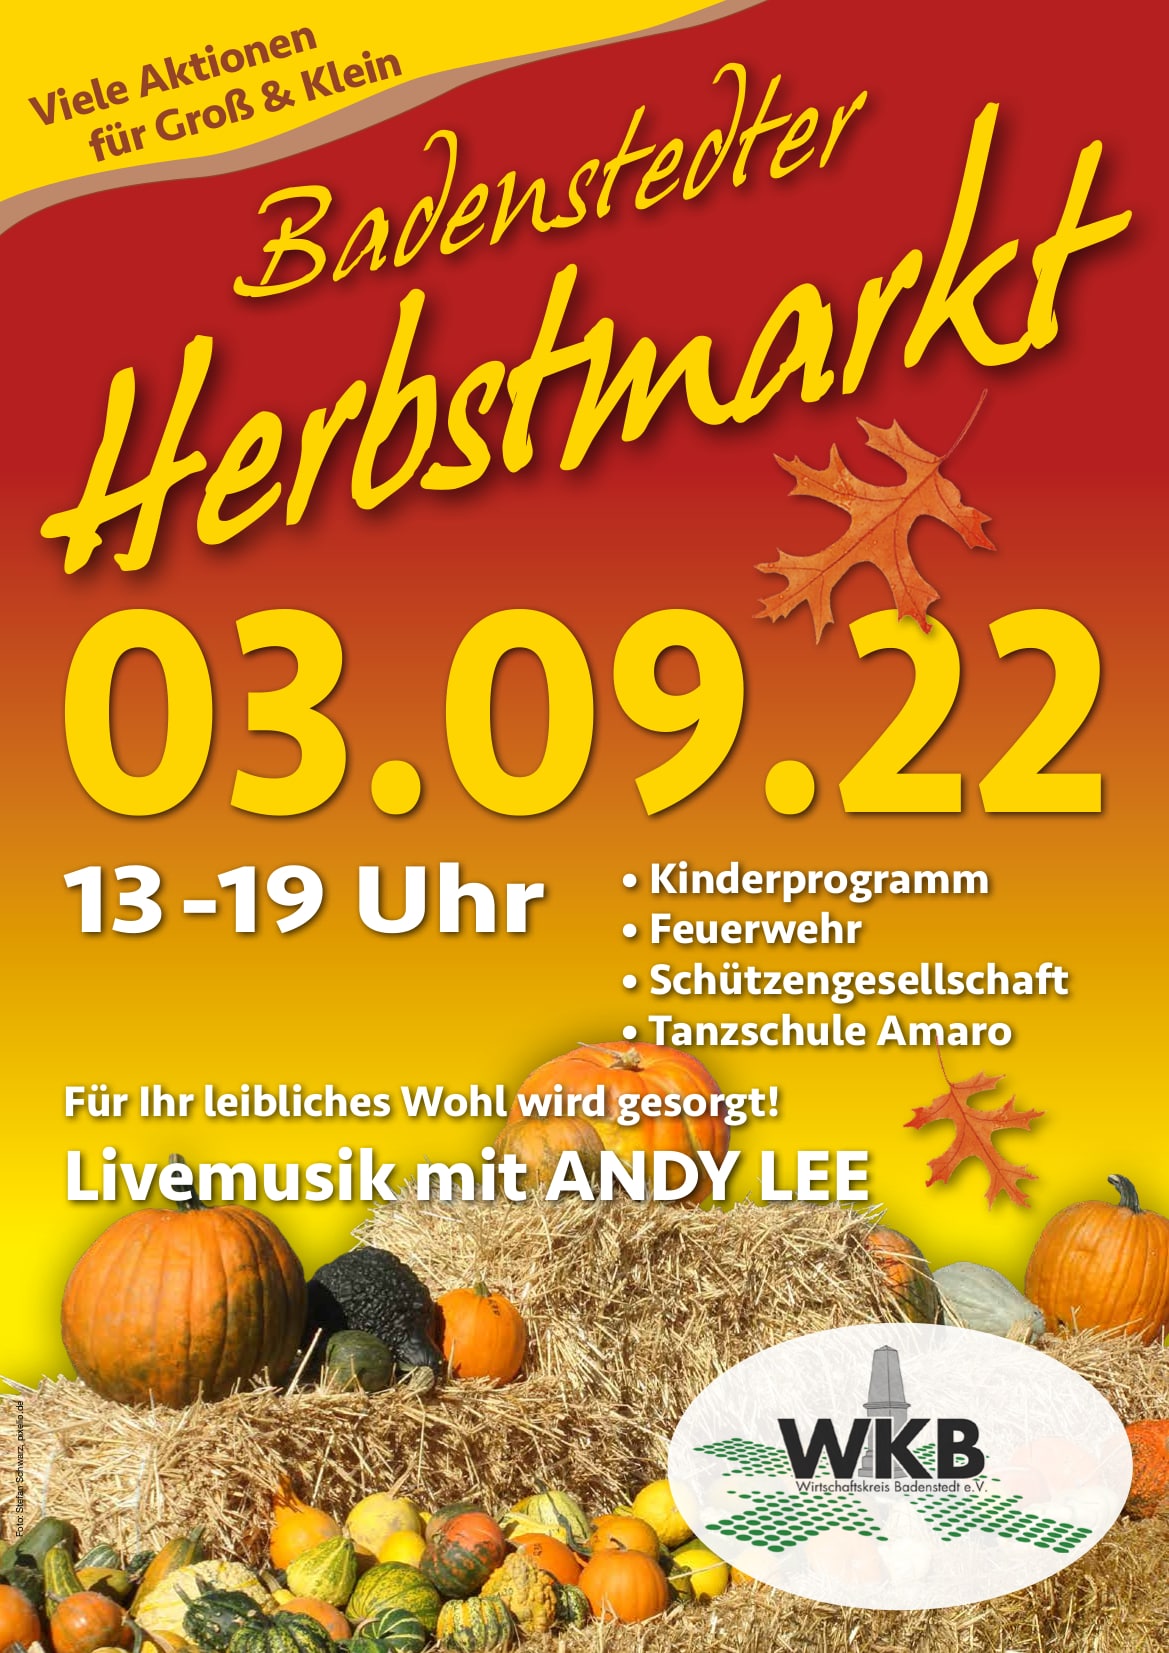 Plakat Herbstmarkt 2022 Wirtschaftskreis Badenstedt